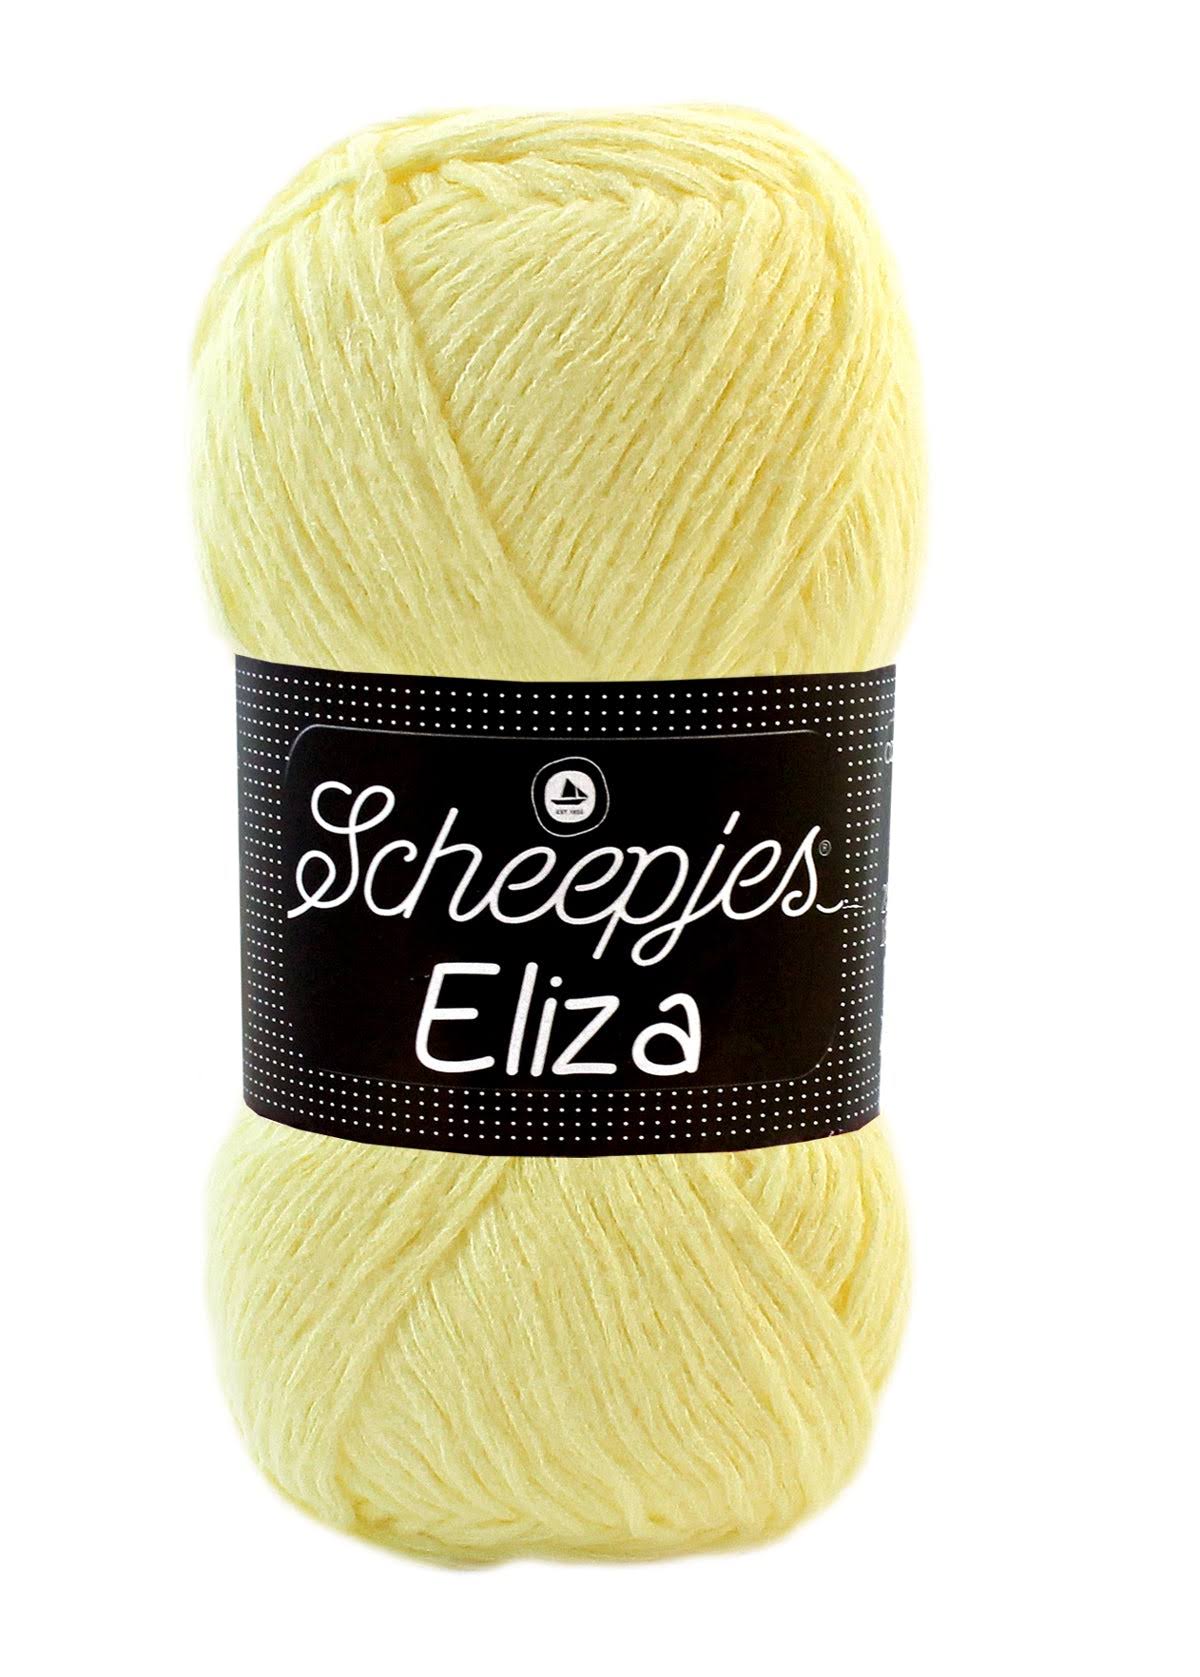 Scheepjes Eliza DK Weight Yellow Yarn 100g - 210 Lemon Slice